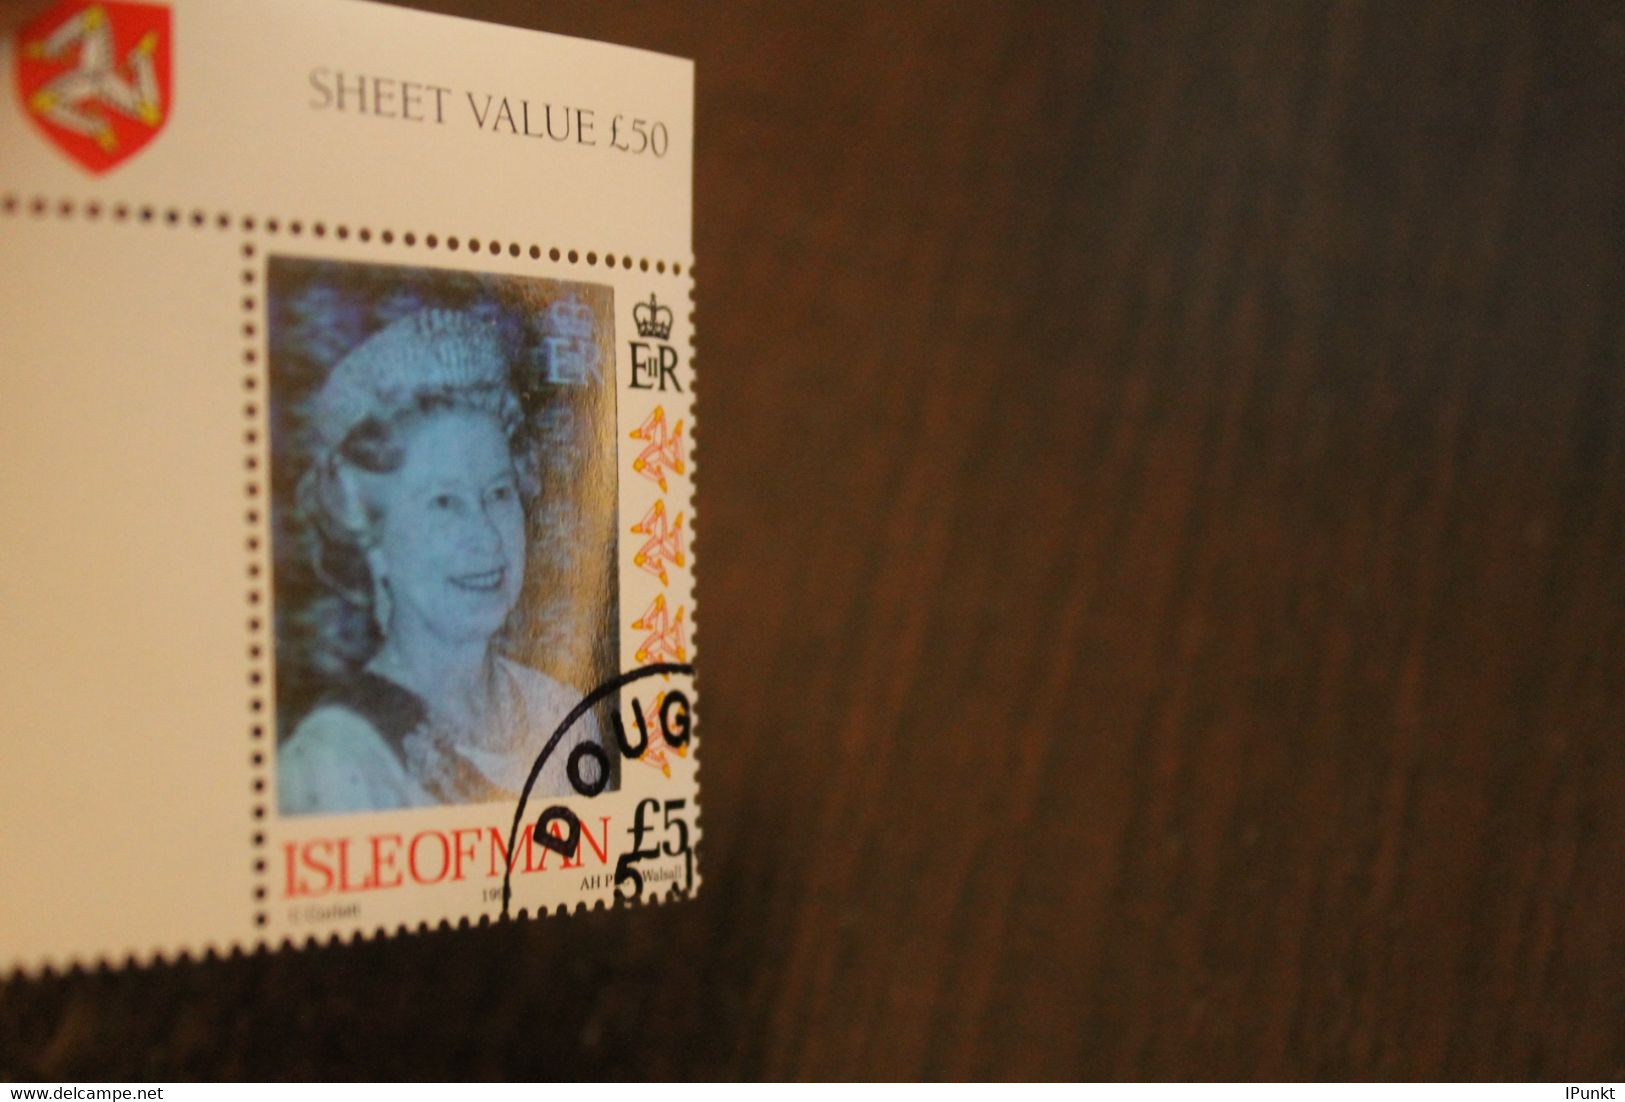 Hologrammmarke 1994, Isle Of Man, Königin Elisabeth II; 5 Pfund; Gestempelt - Holograms